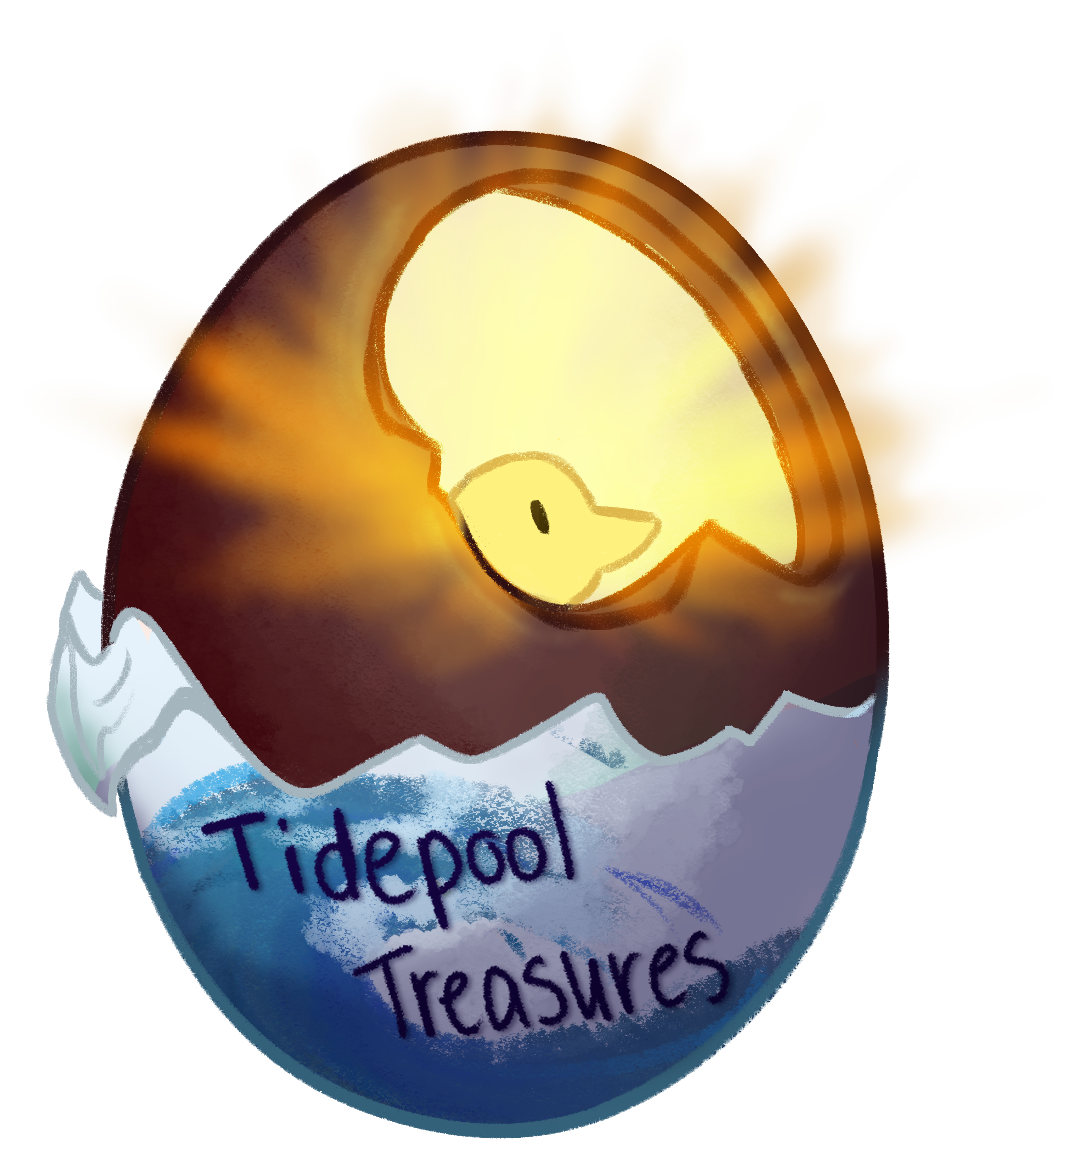 Tidepool Treasures Egg